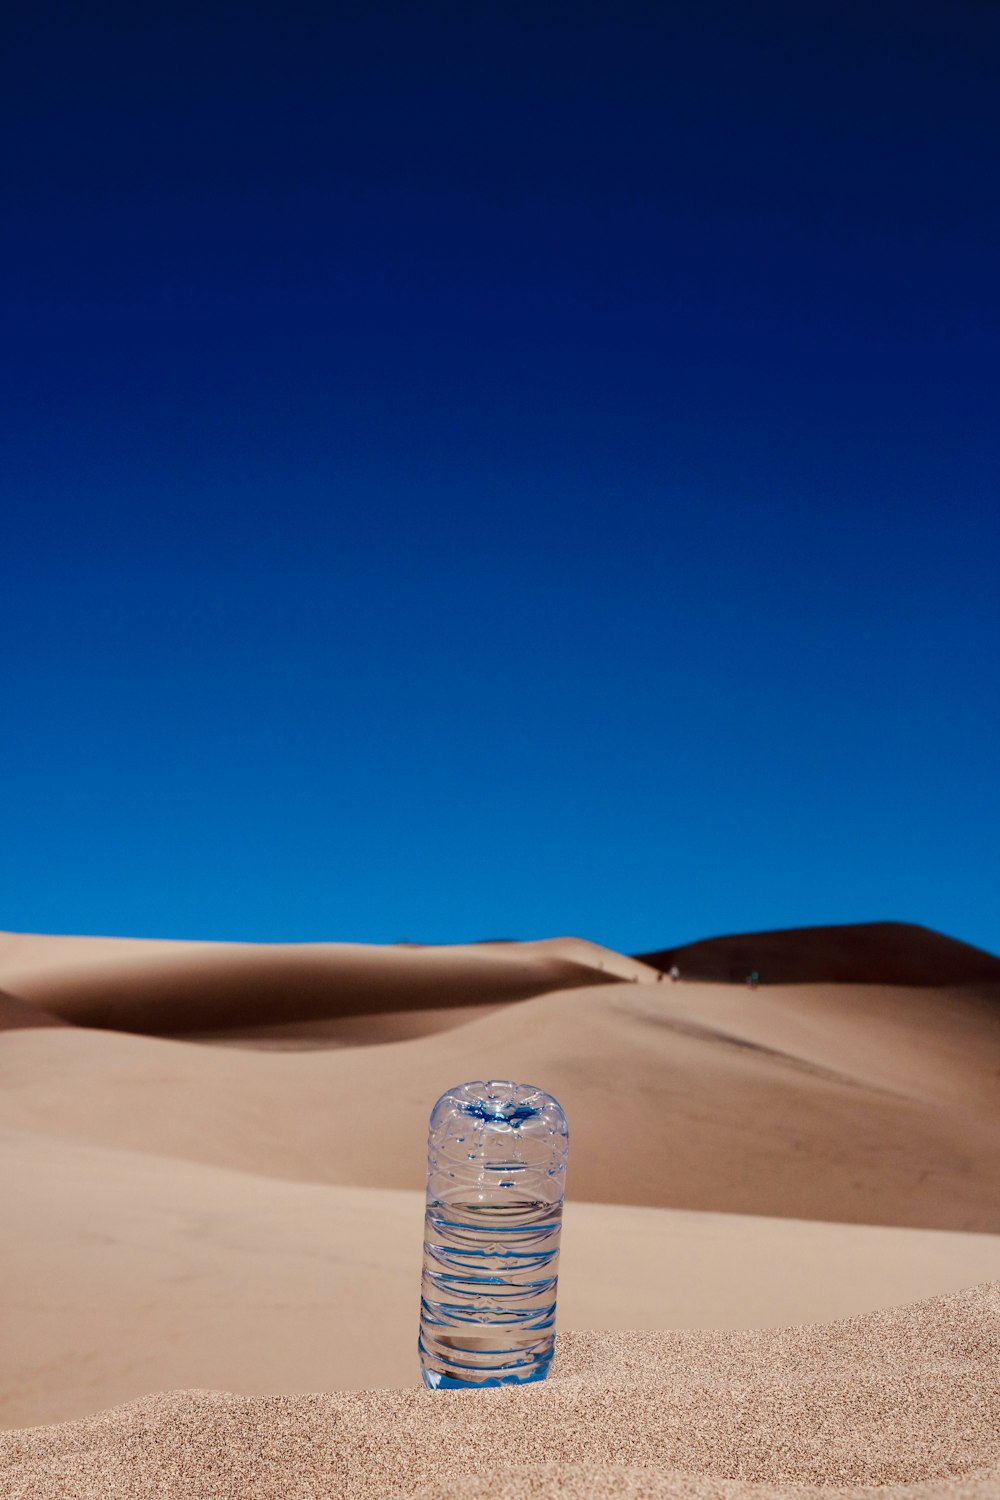 茶色の砂の上に透明なペットボトル